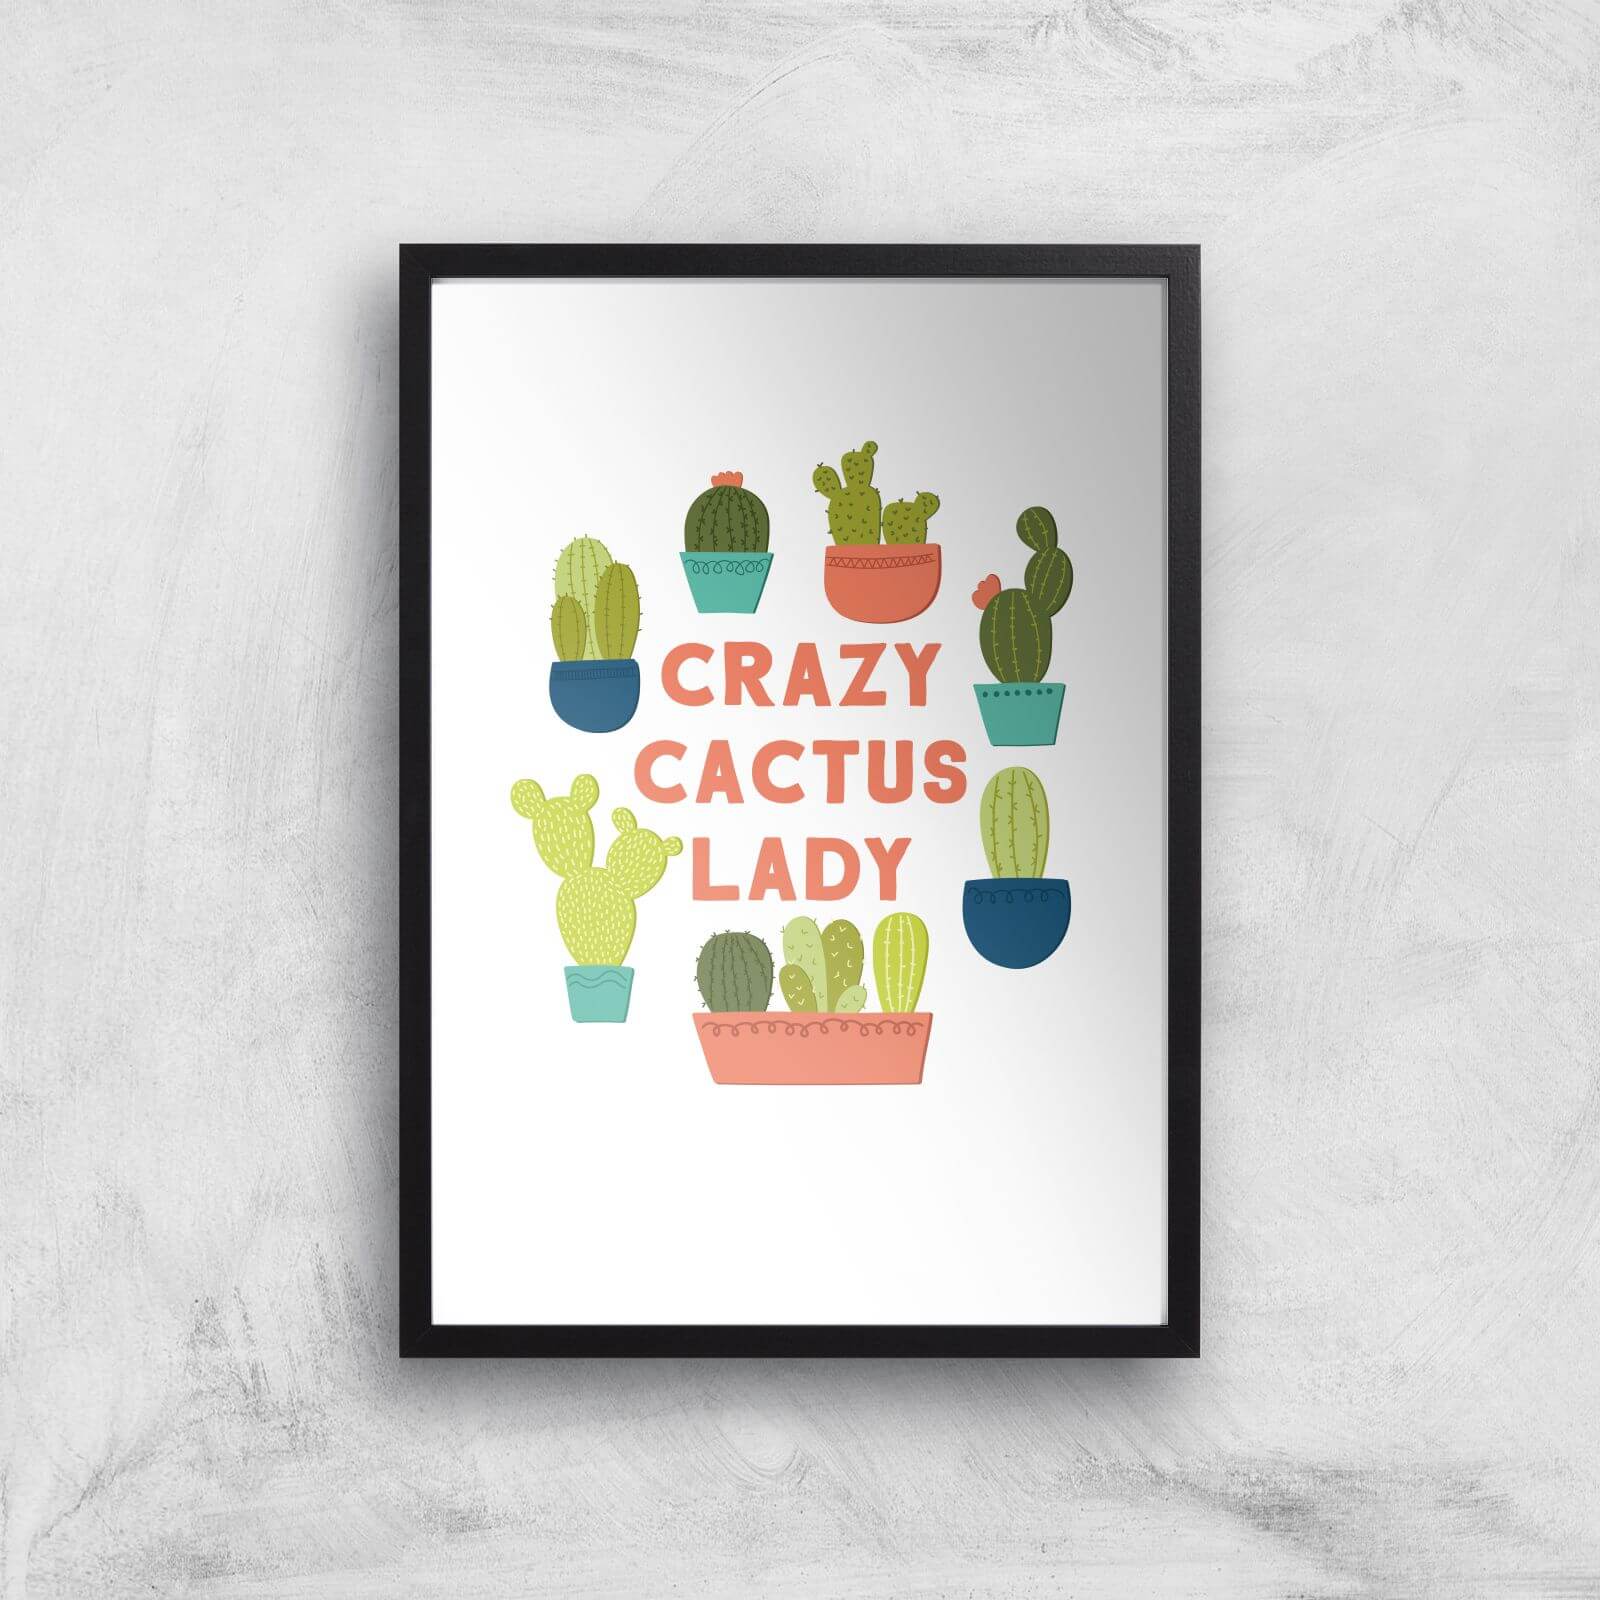 Crazy Cactus Lady Art Print - A4 - Black Frame